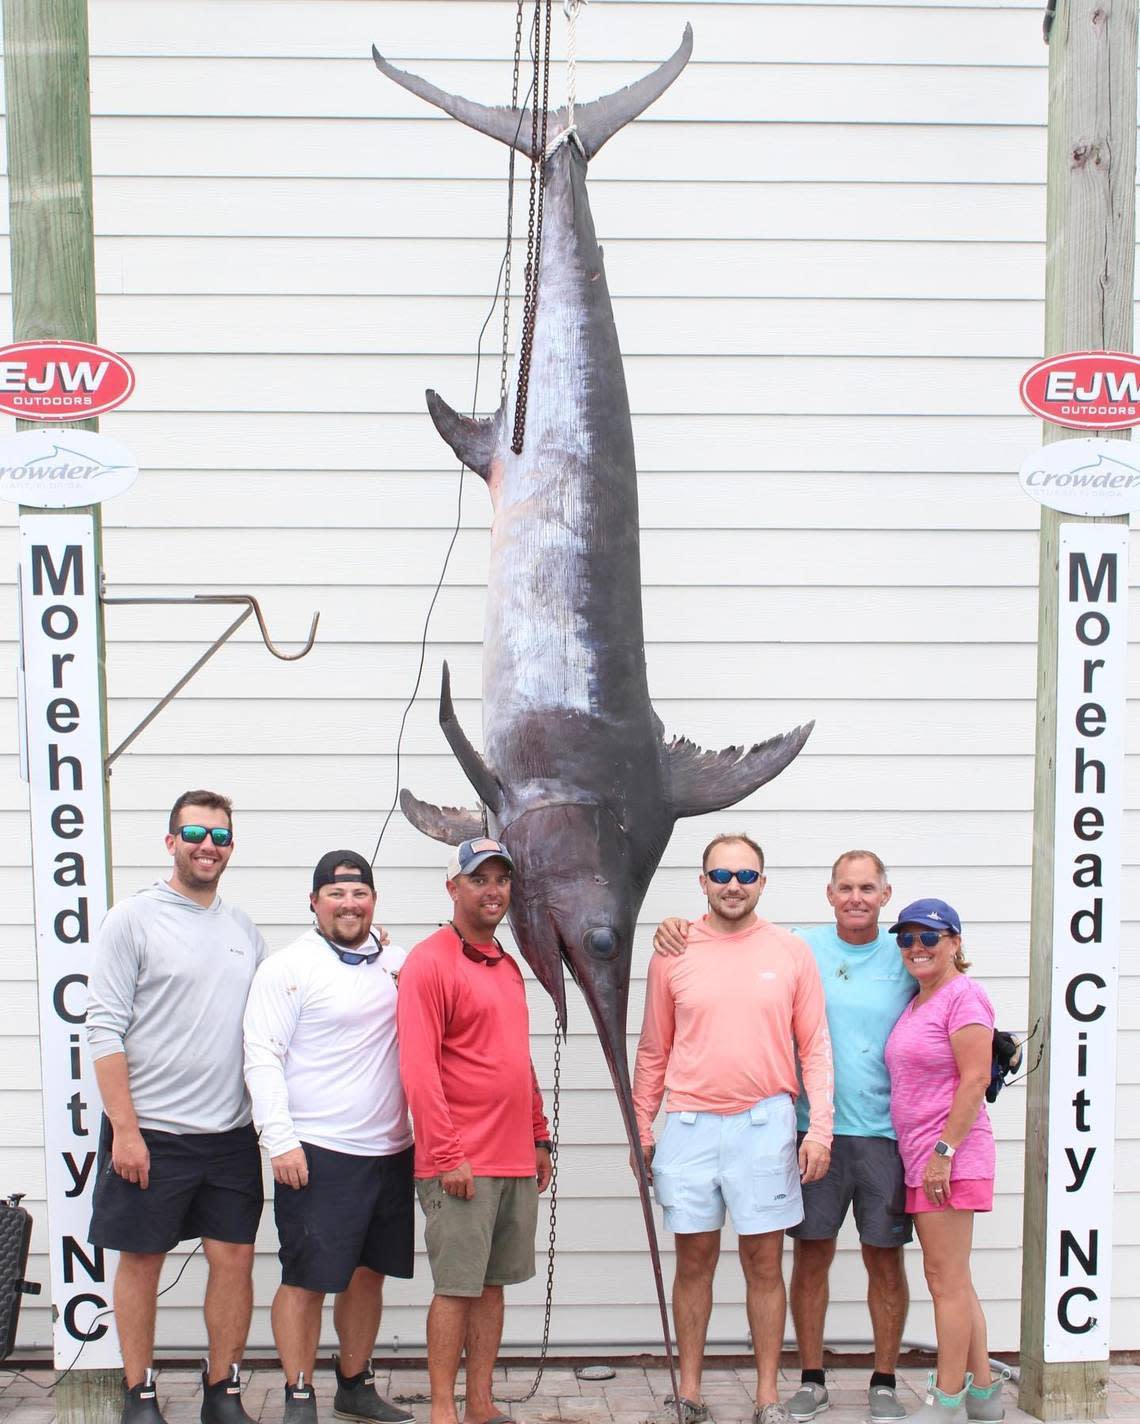 Biggest caught swordfish in NC history